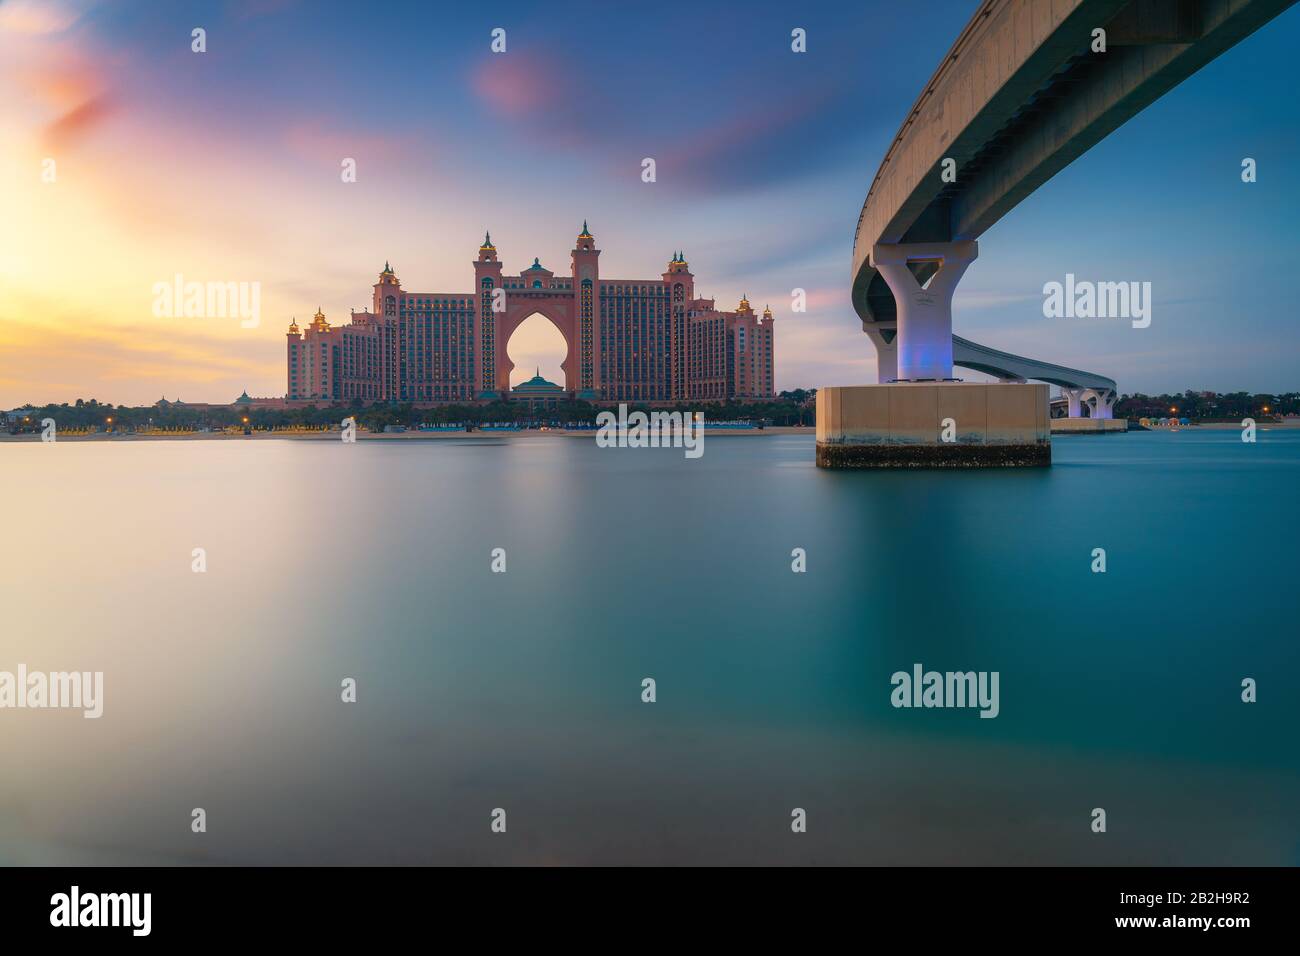 Vue imprenable sur Atlantis Resort, Hotel & Theme Park sur l'île de Palm Jumeirah, vue de la Pointe Dubai, Emirats Arabes Unis. Inspiration voyage de luxe. Banque D'Images